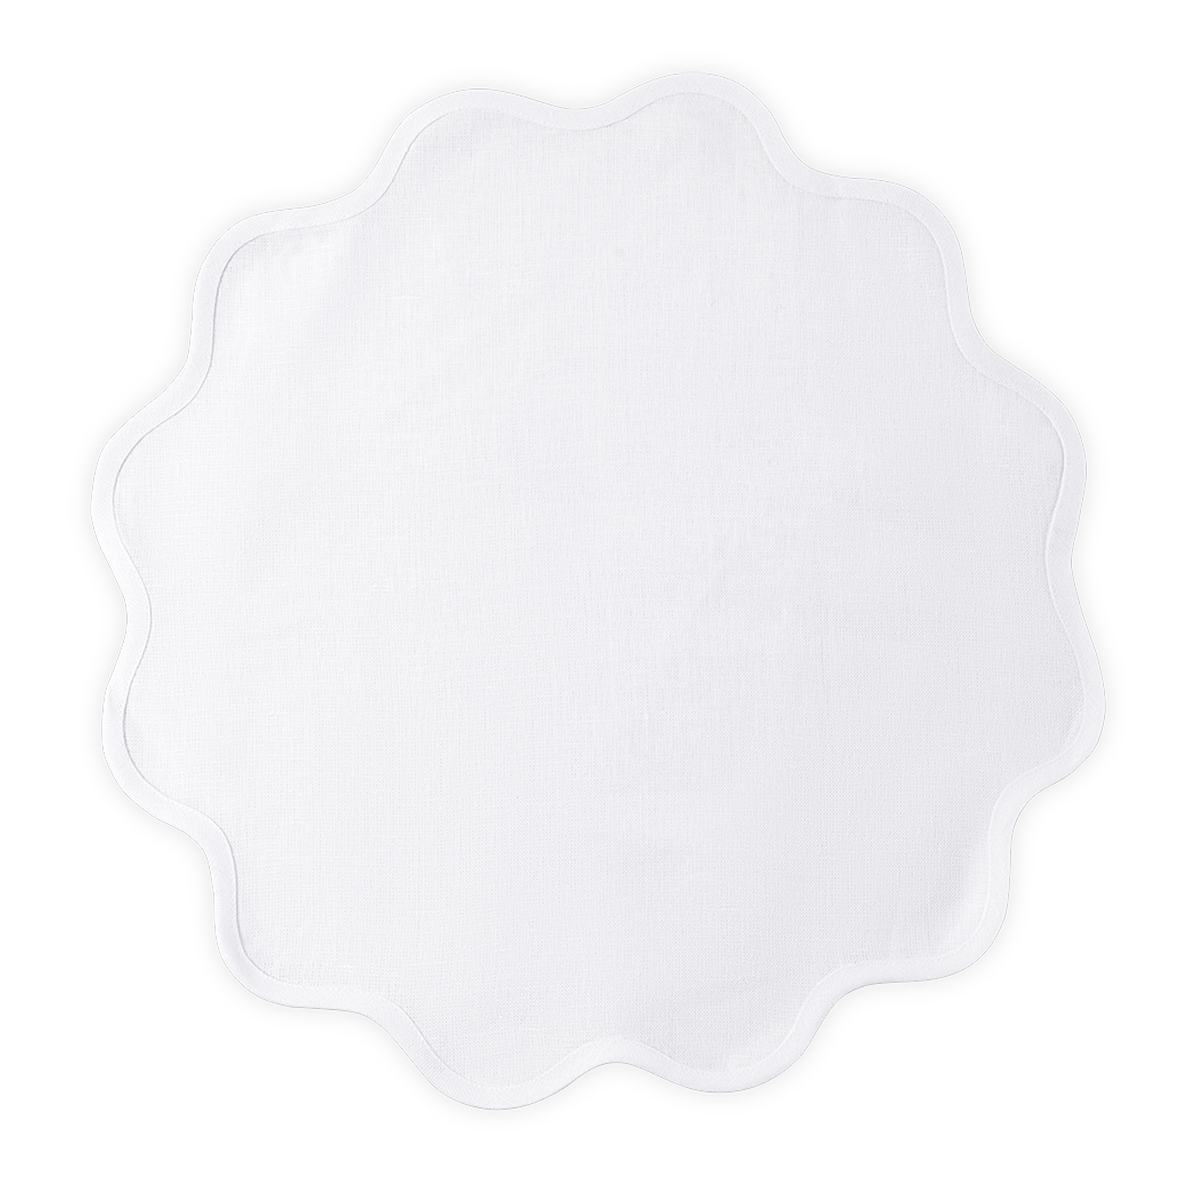 Silo Image of Matouk Scallop Edge Circle Placemat in Color White/White